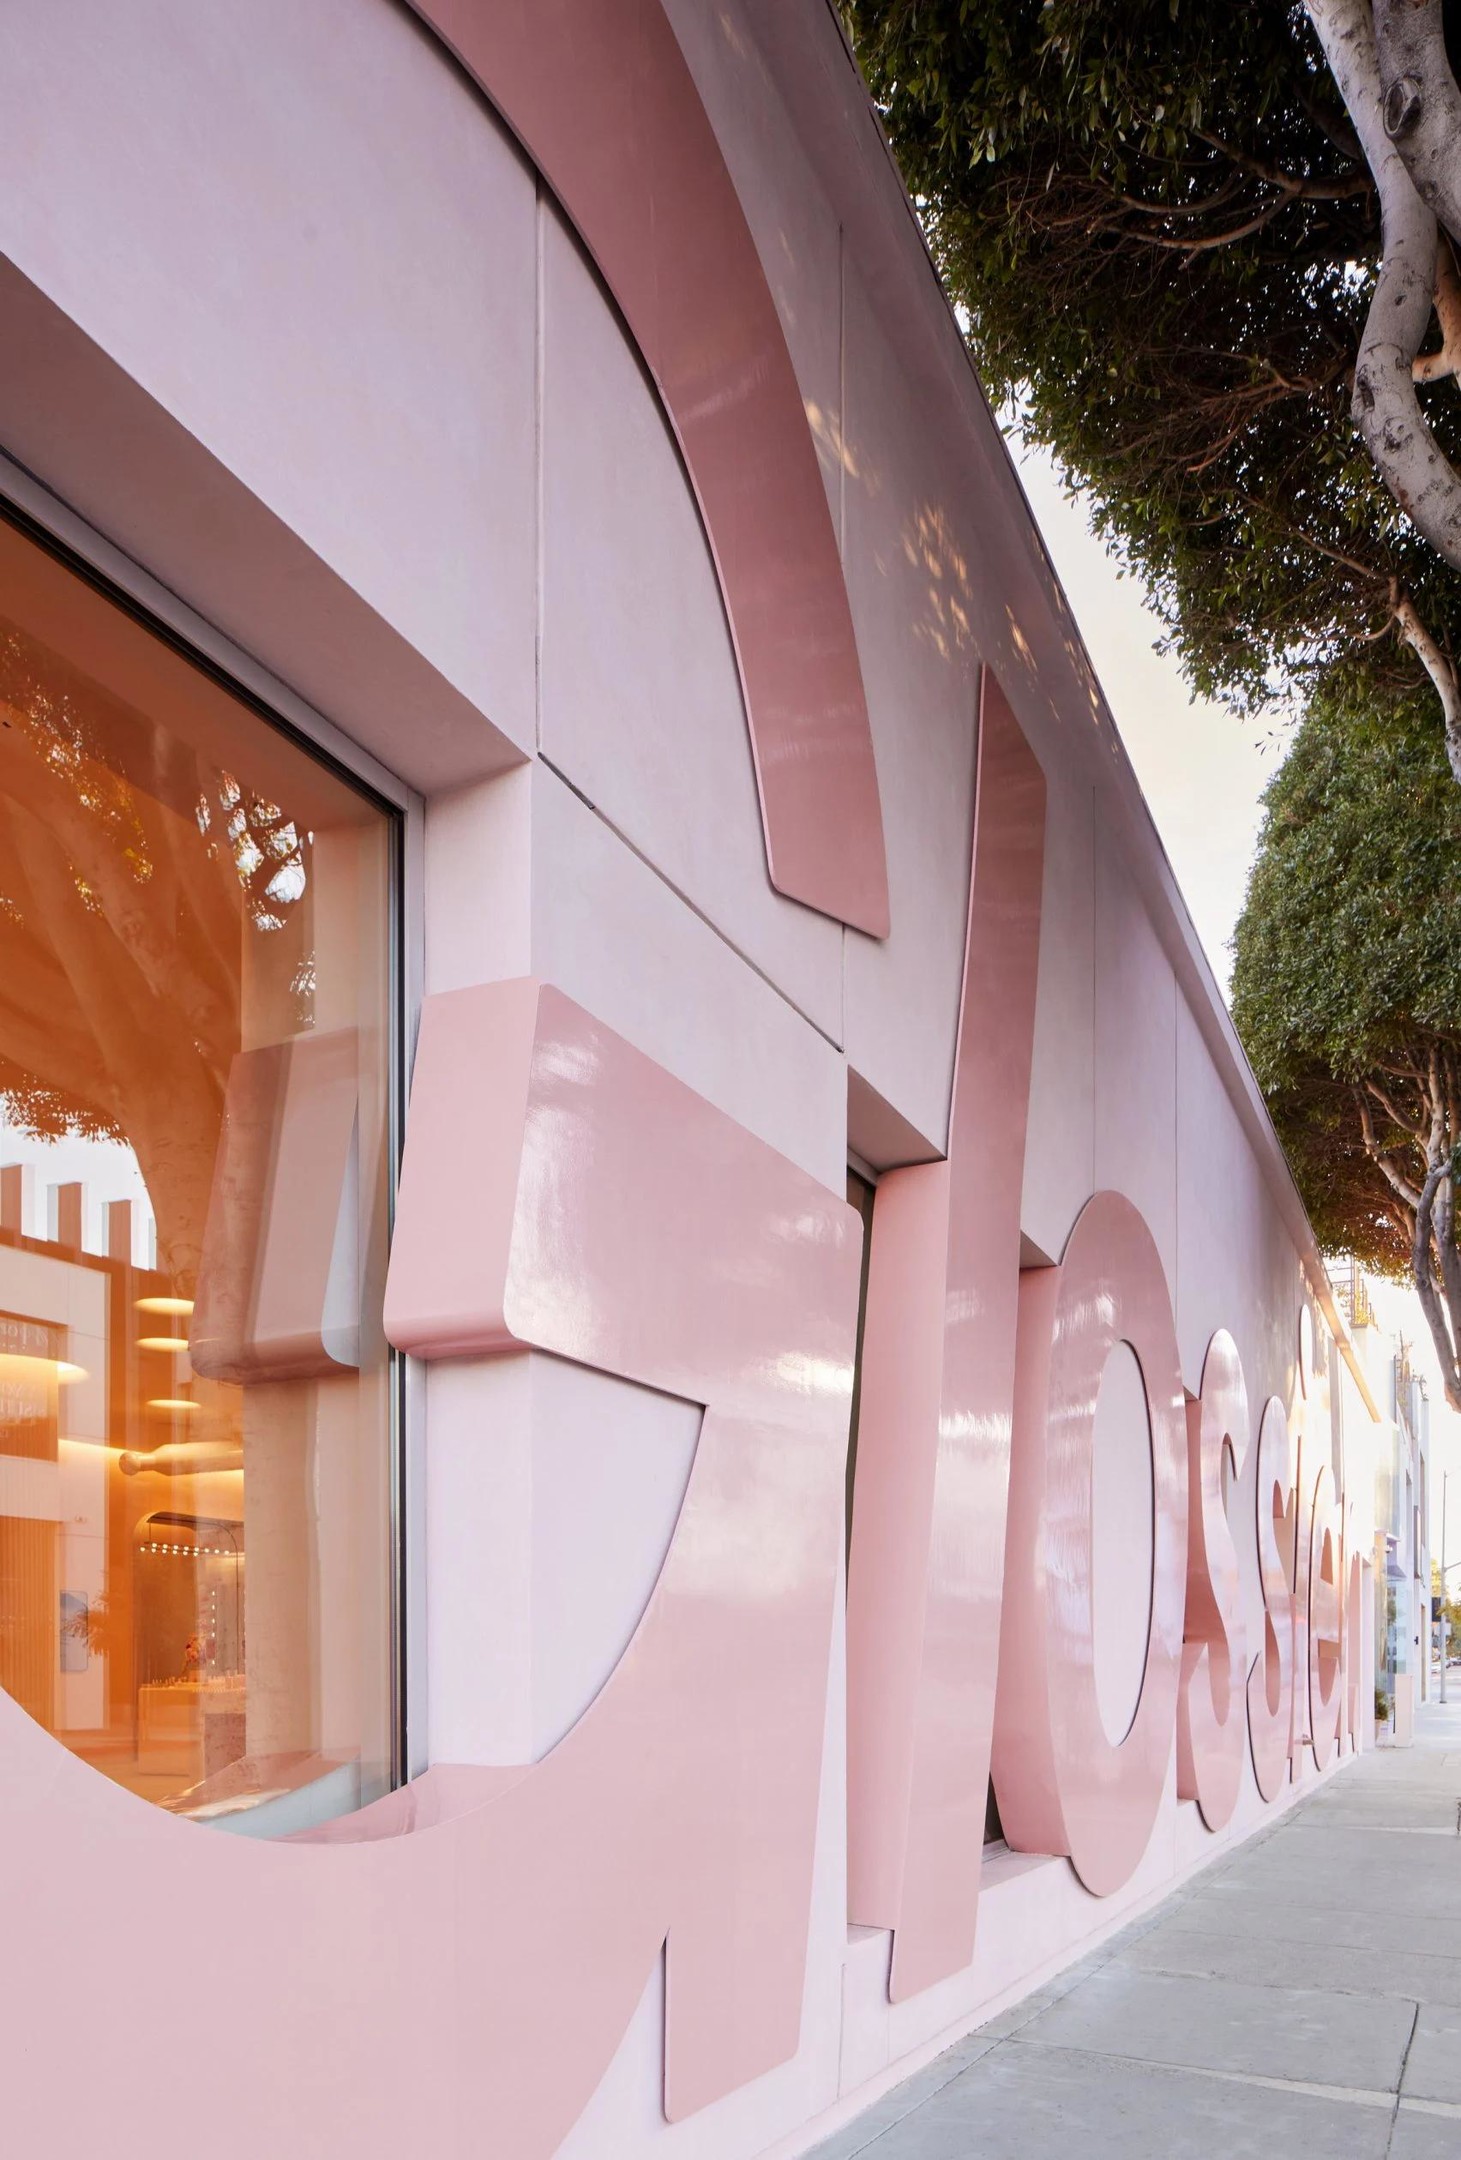 Cửa hàng thu hút sự chú ý của người qua đường với mặt tiền màu hồng phấn với dòng chữ GLOSSIER bóng loáng. 